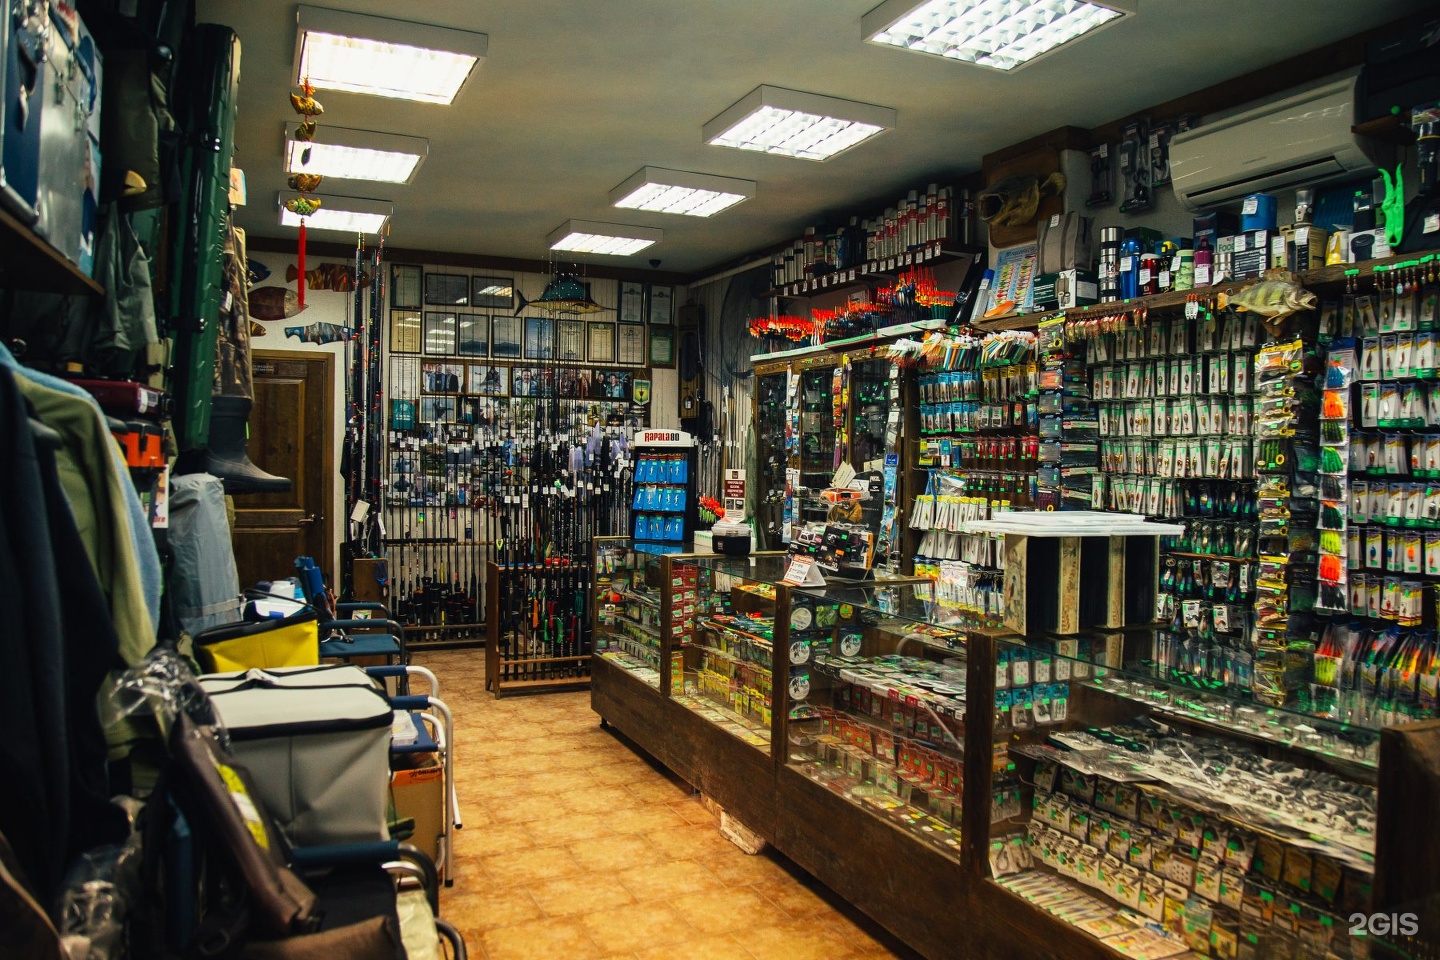 рыболовный магазин москва